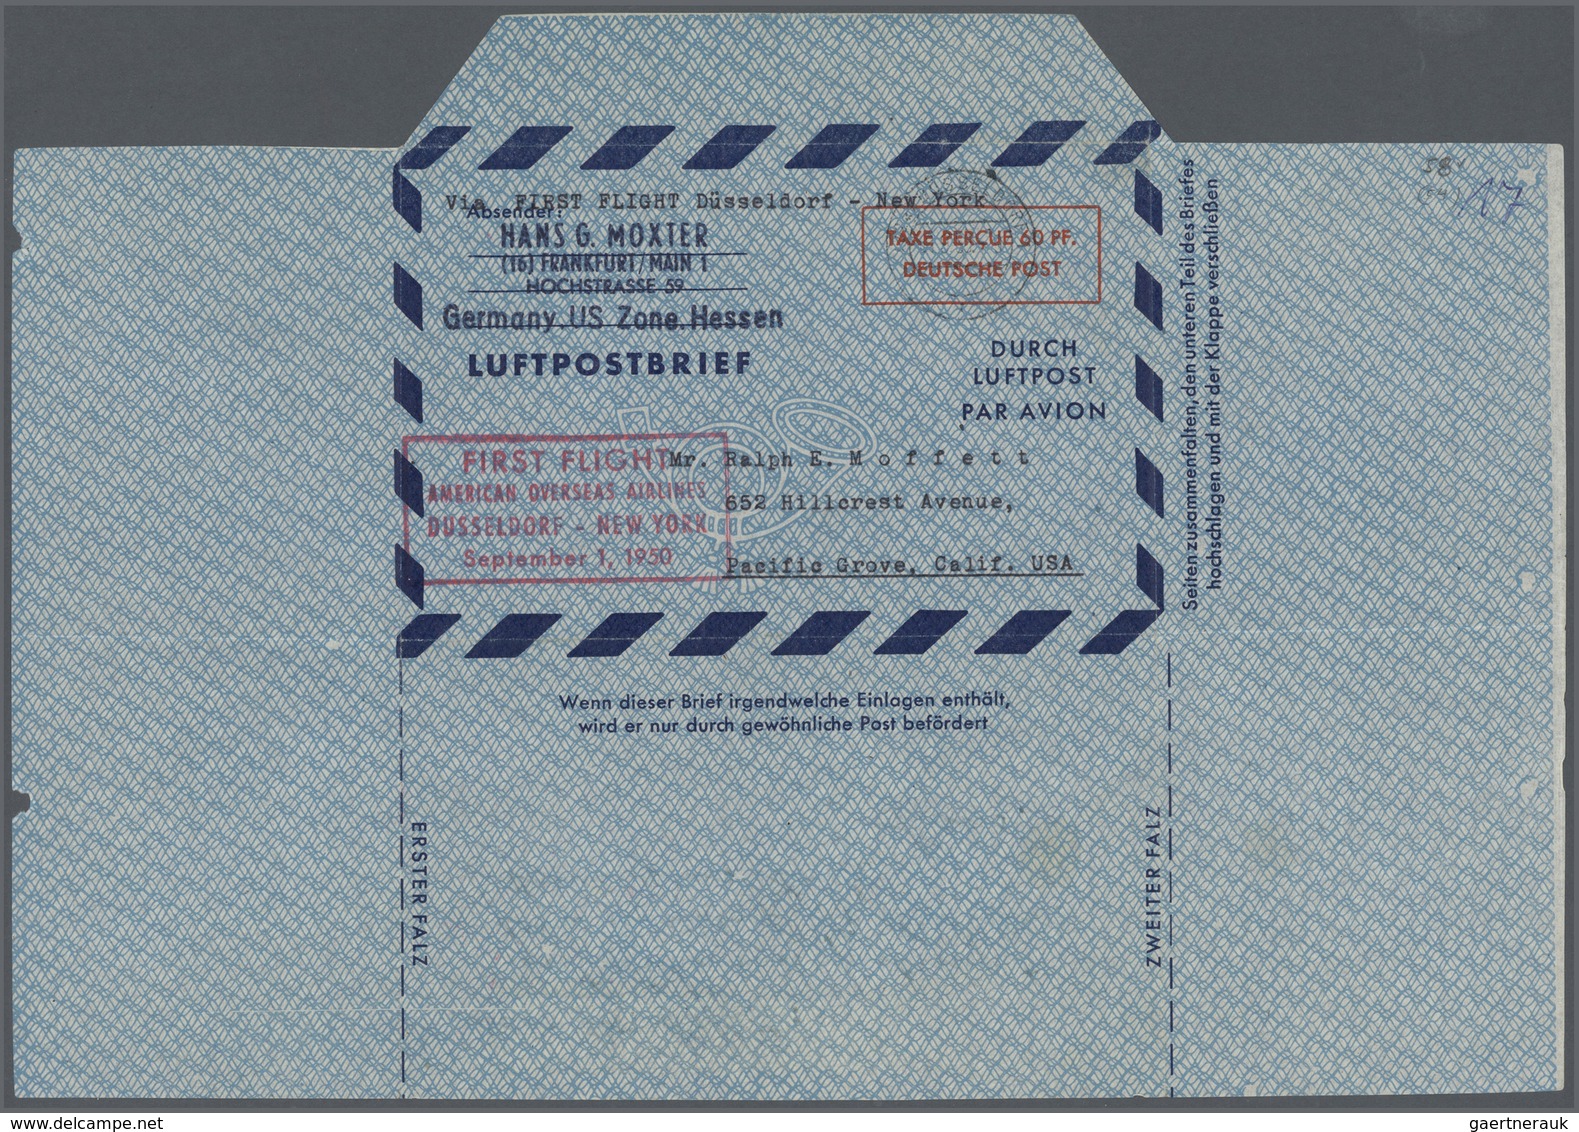 32418 Bundesrepublik und Berlin: Ab 1948. Spezialsammlung LUFTPOST-FALTBRIEFE Berlin/Bizone/Bund. Extrem d